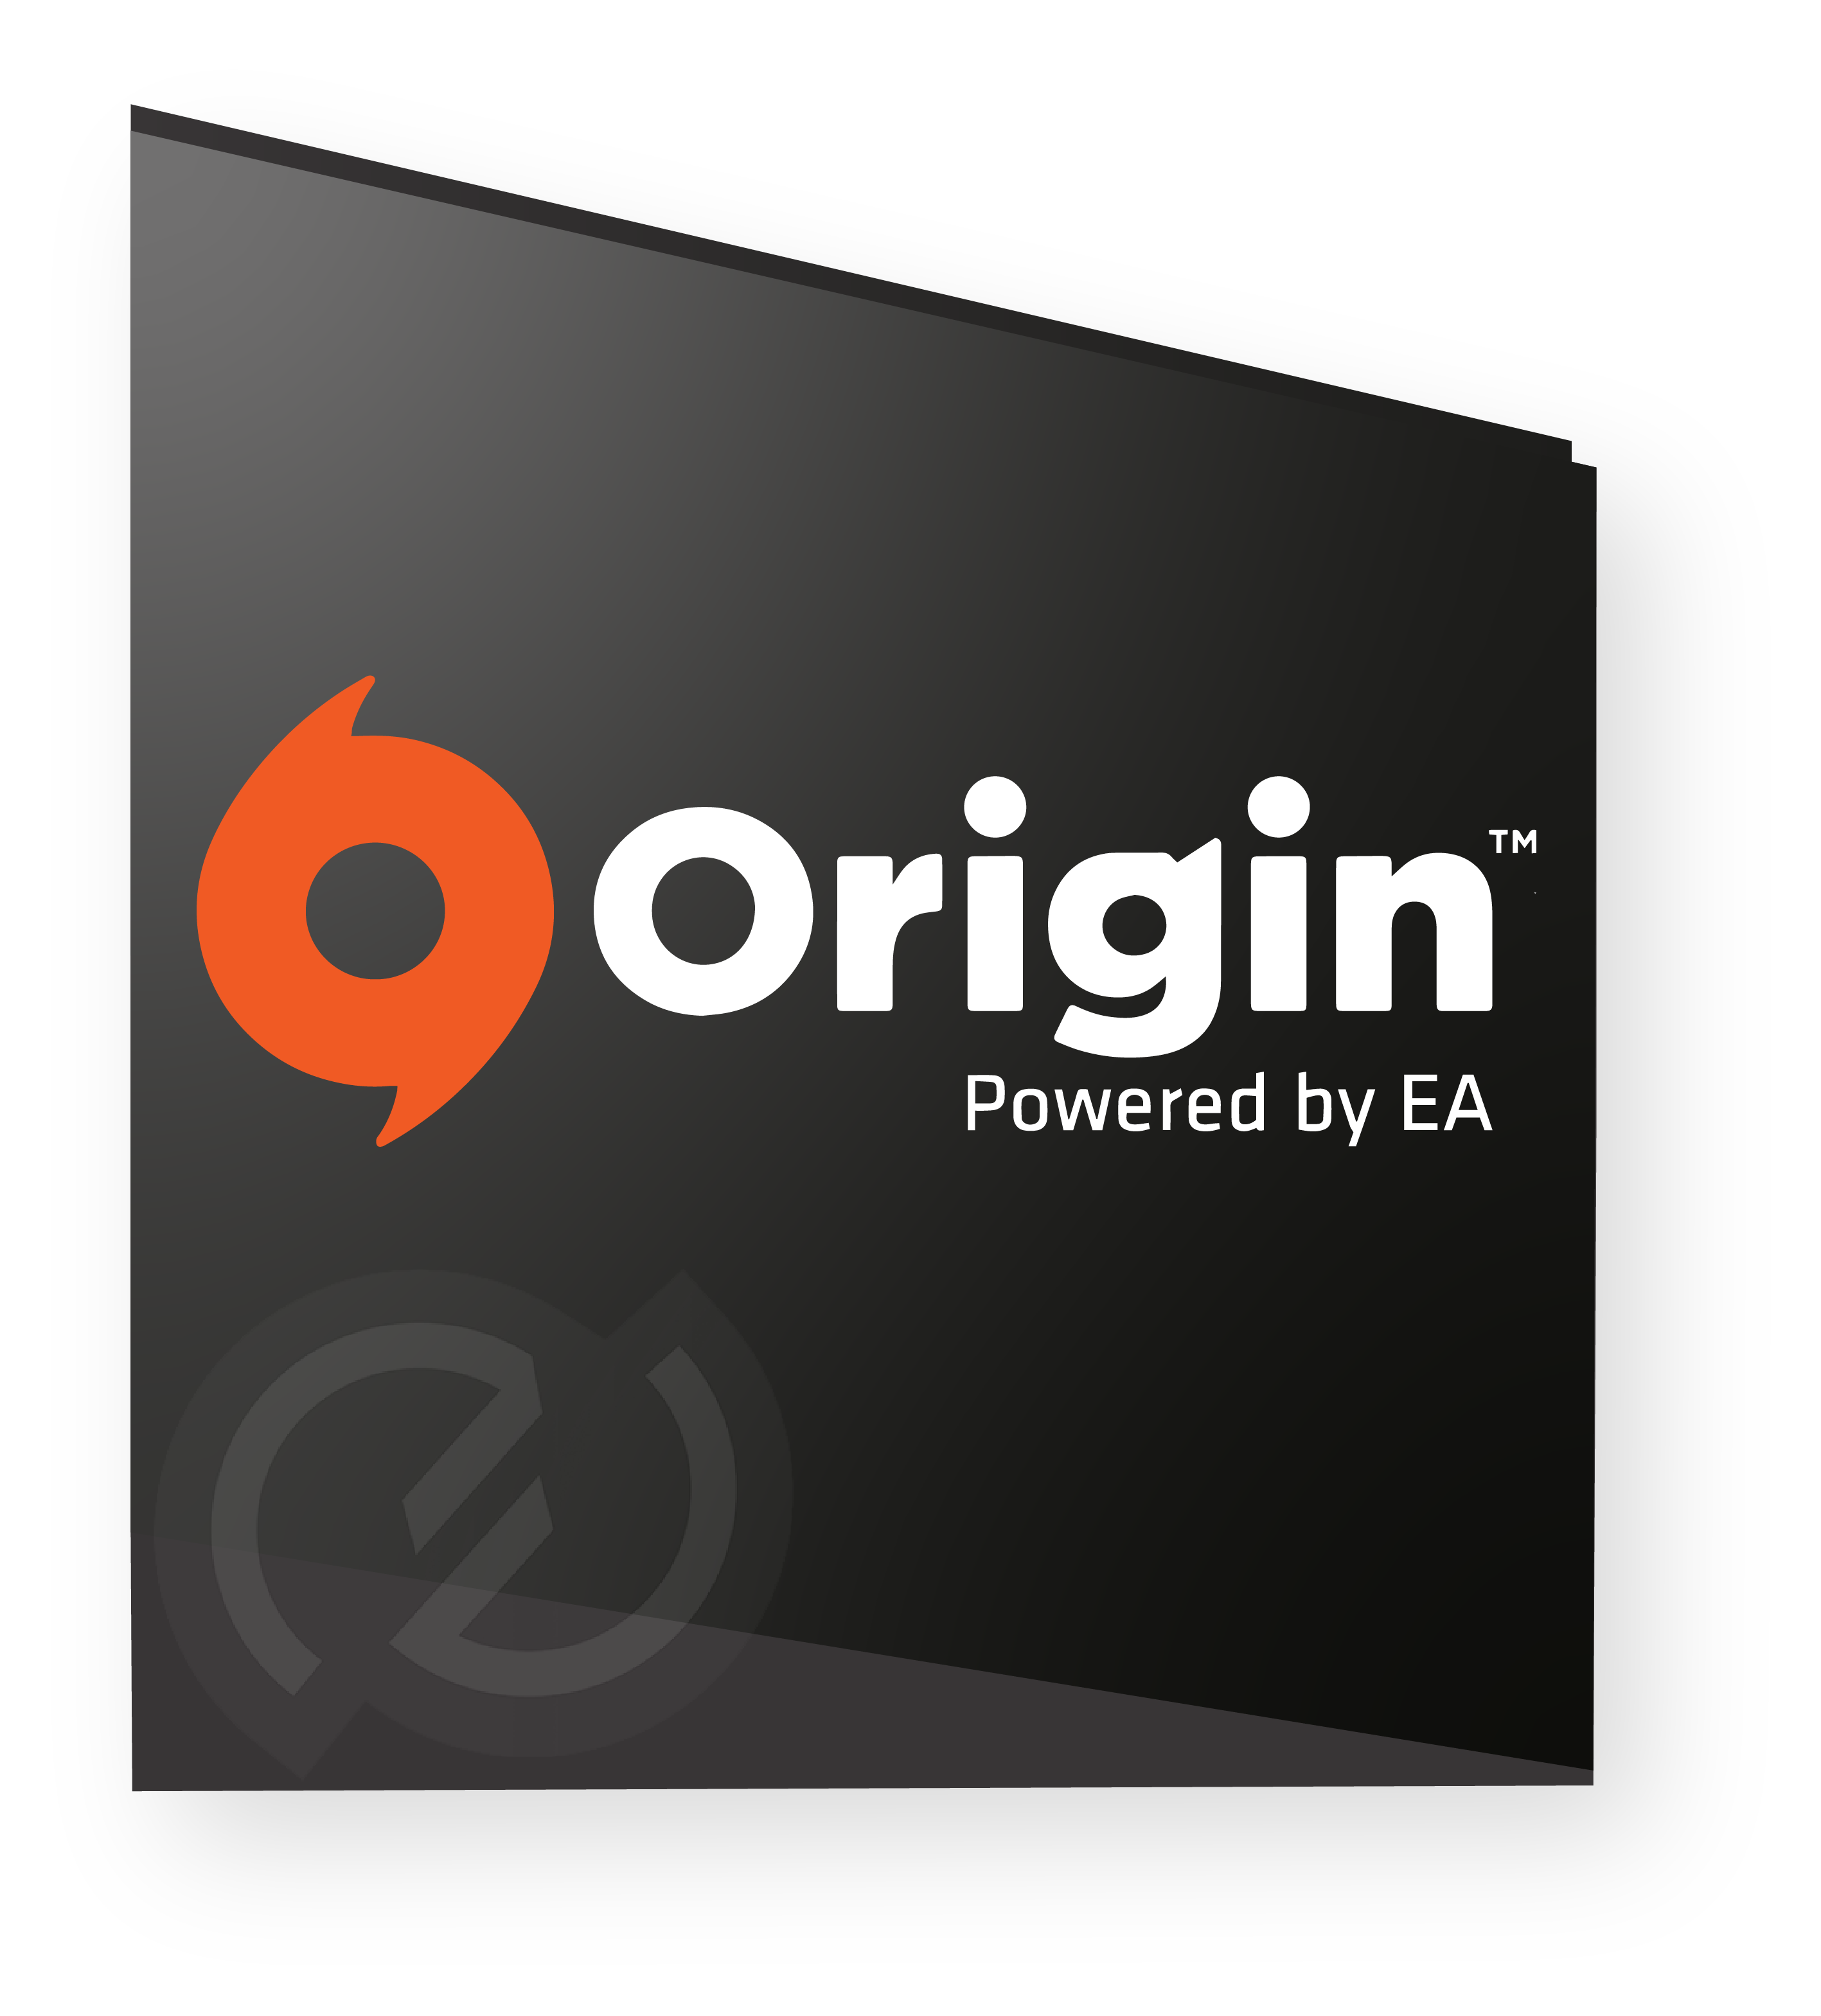 Image logo Origin